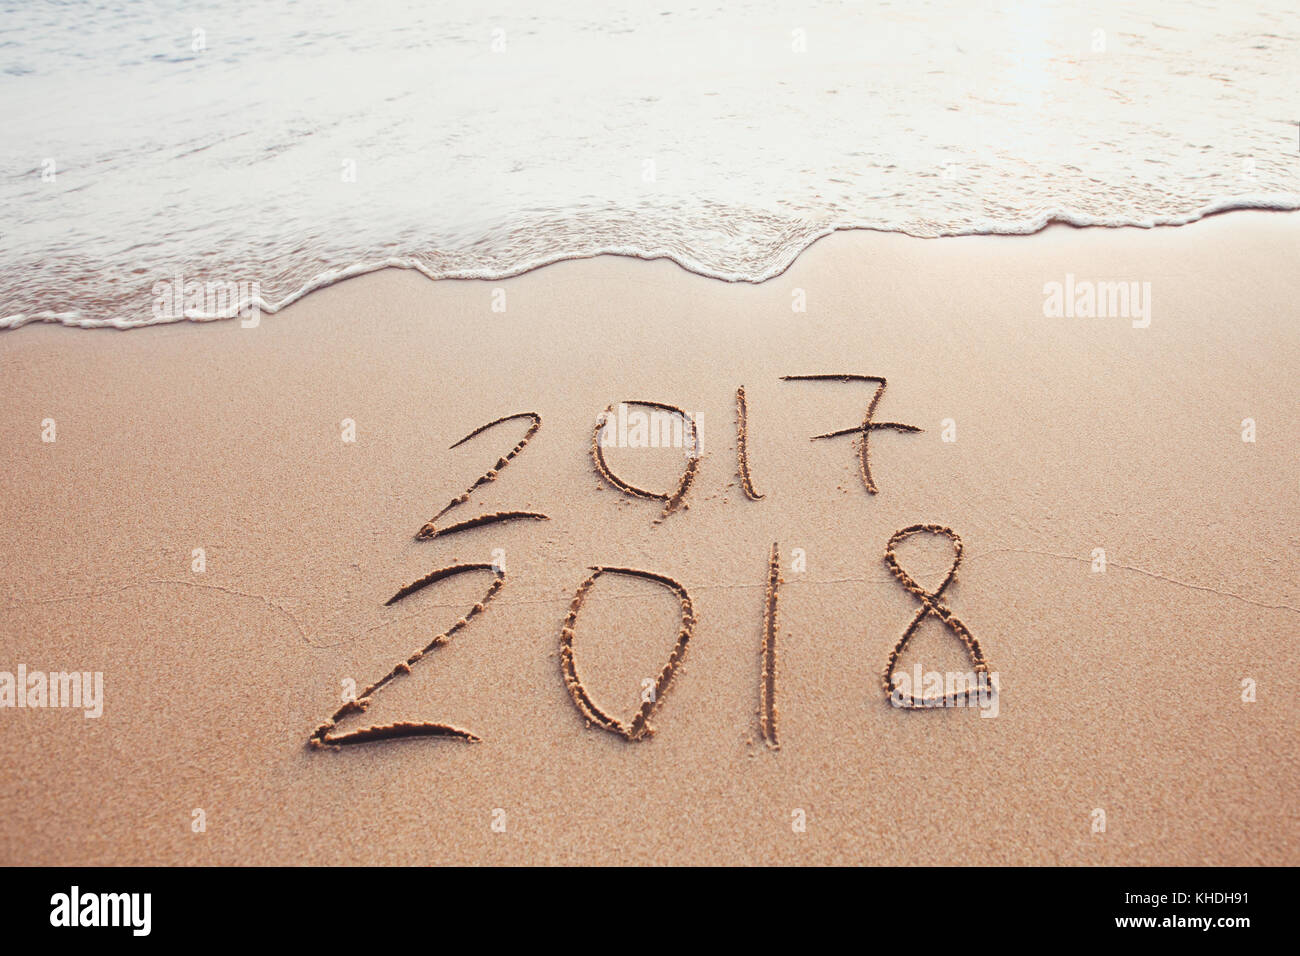 Changement de l'an 2017 à 2018, dates de calendrier écrit sur le sable de plage Banque D'Images